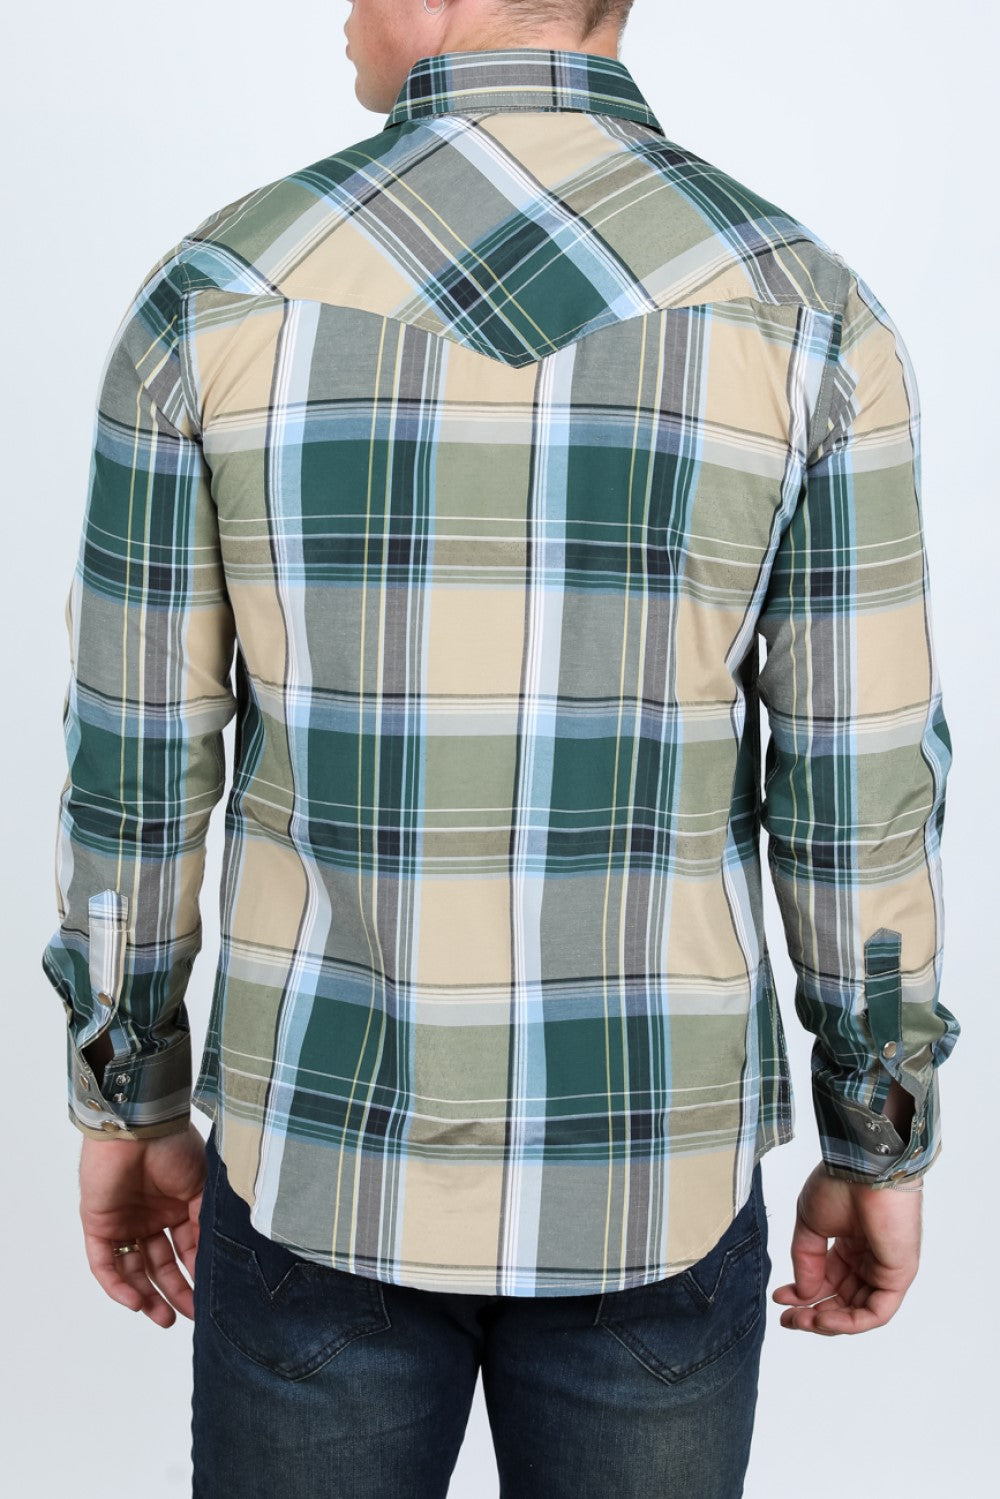 Camisa de Cuadros MC-200-54 - Camisas Vaqueras de Manga Larga para Hombre - Camisas Vaqueras Cafe para Hombre (3)